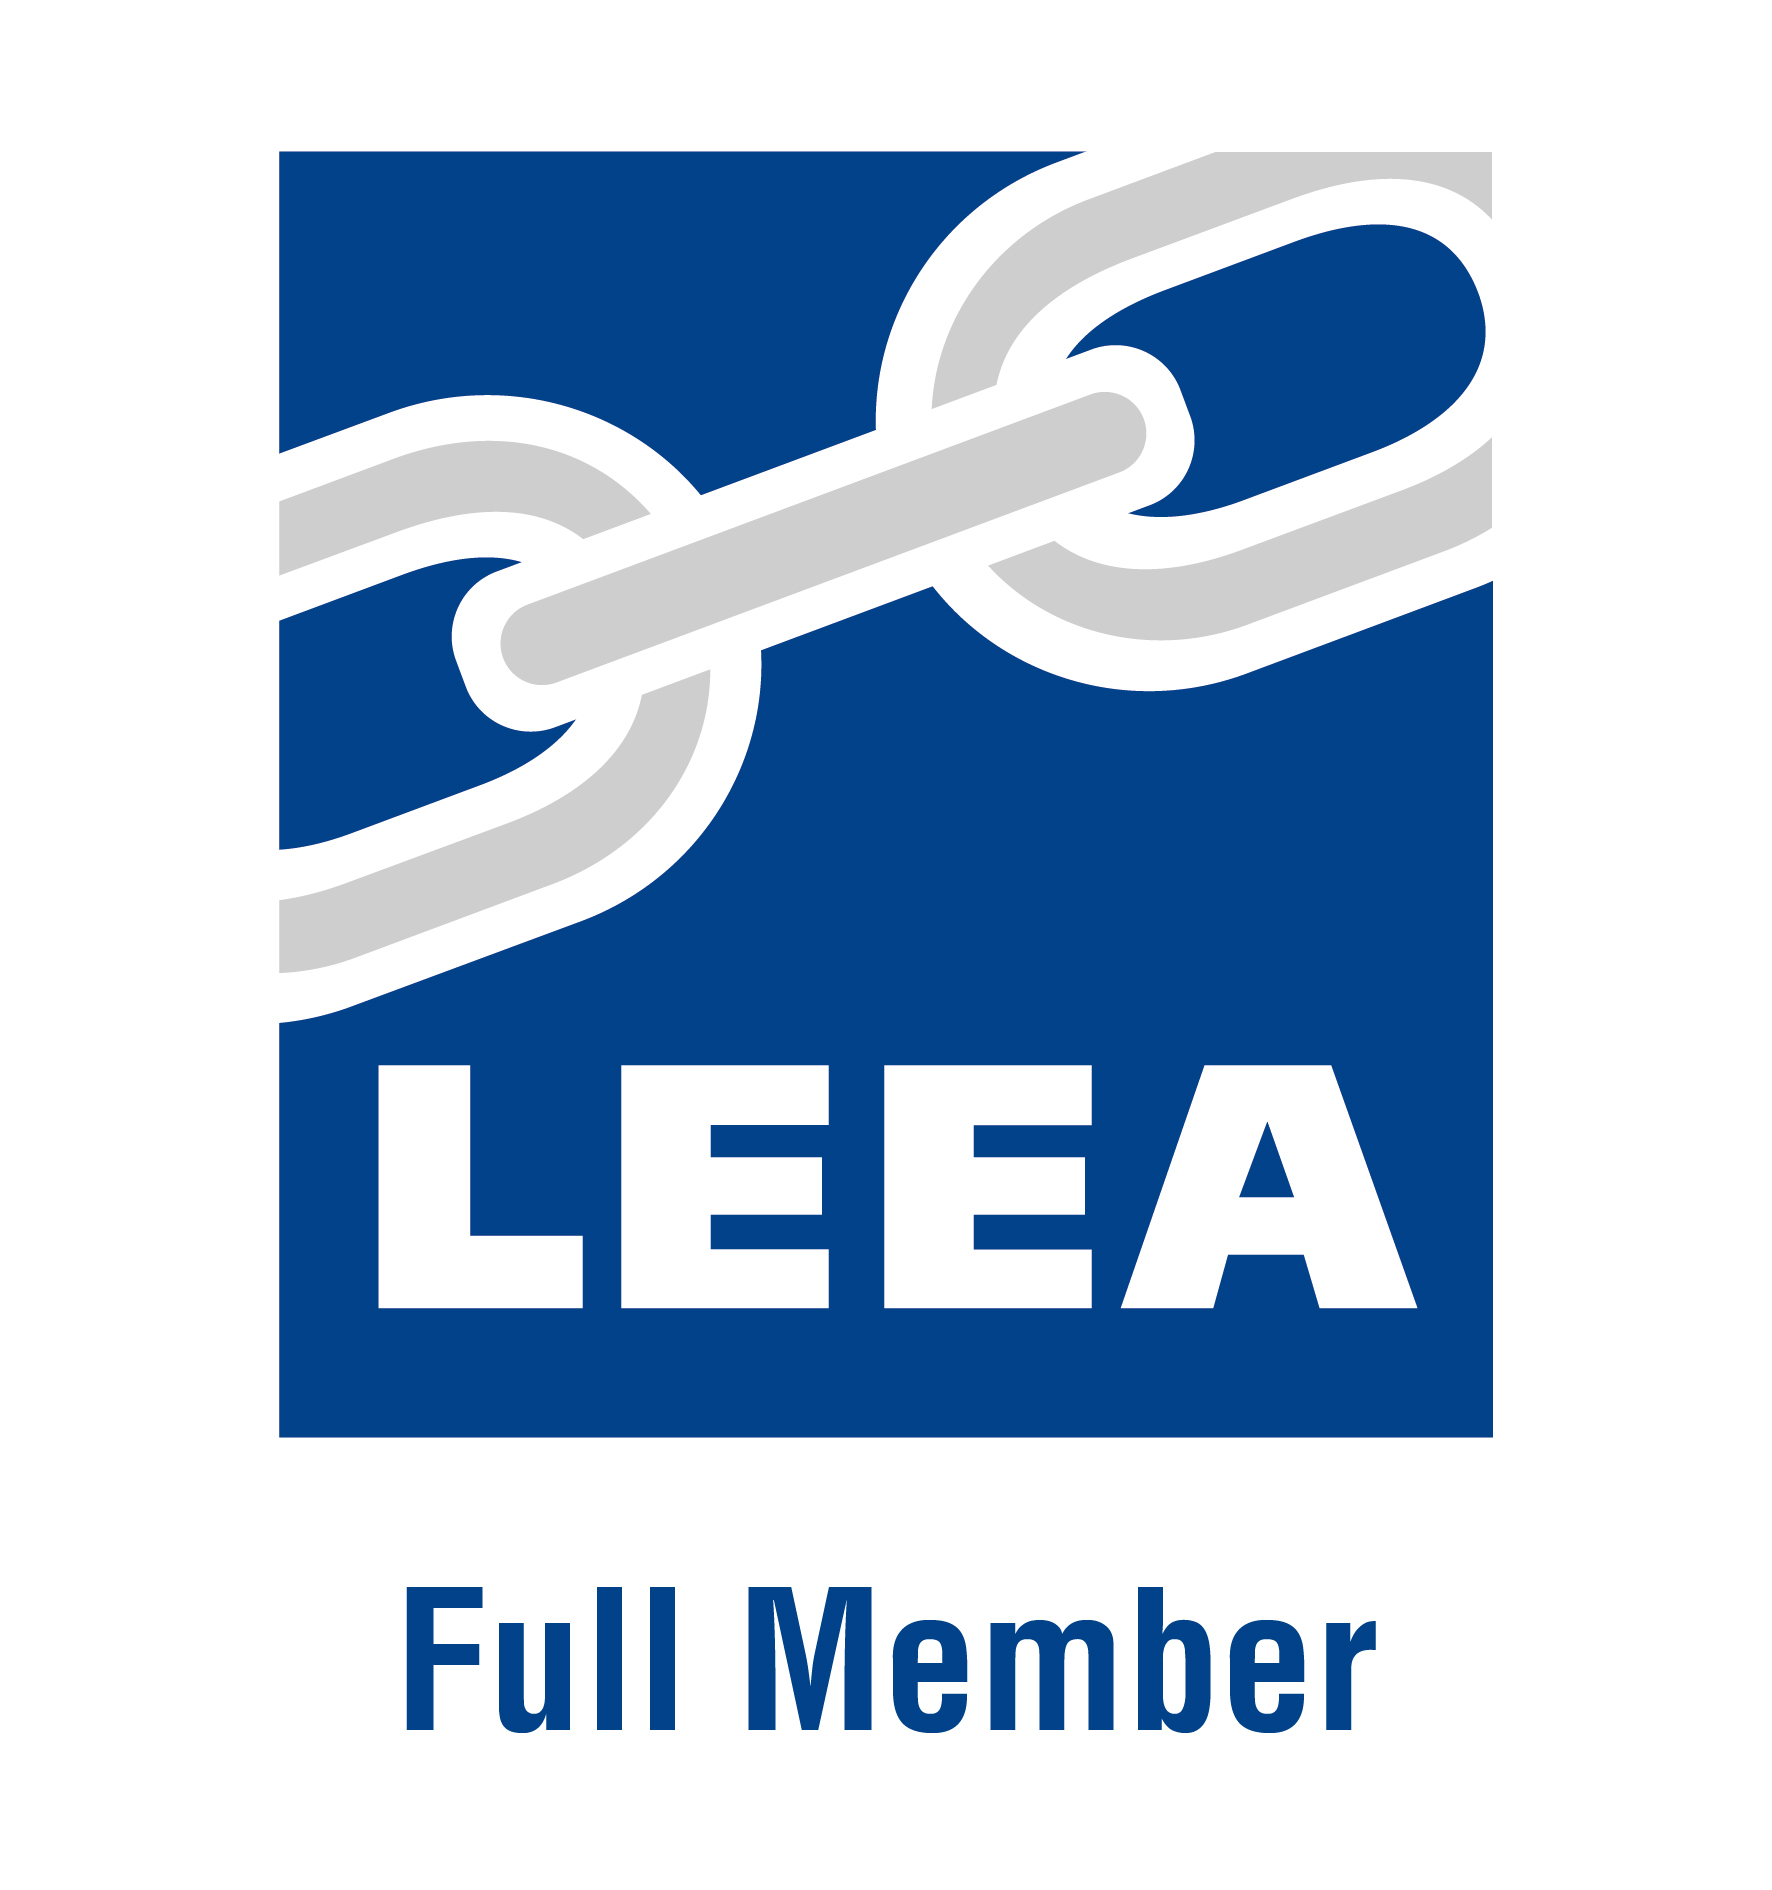 LEEA-Logo-1